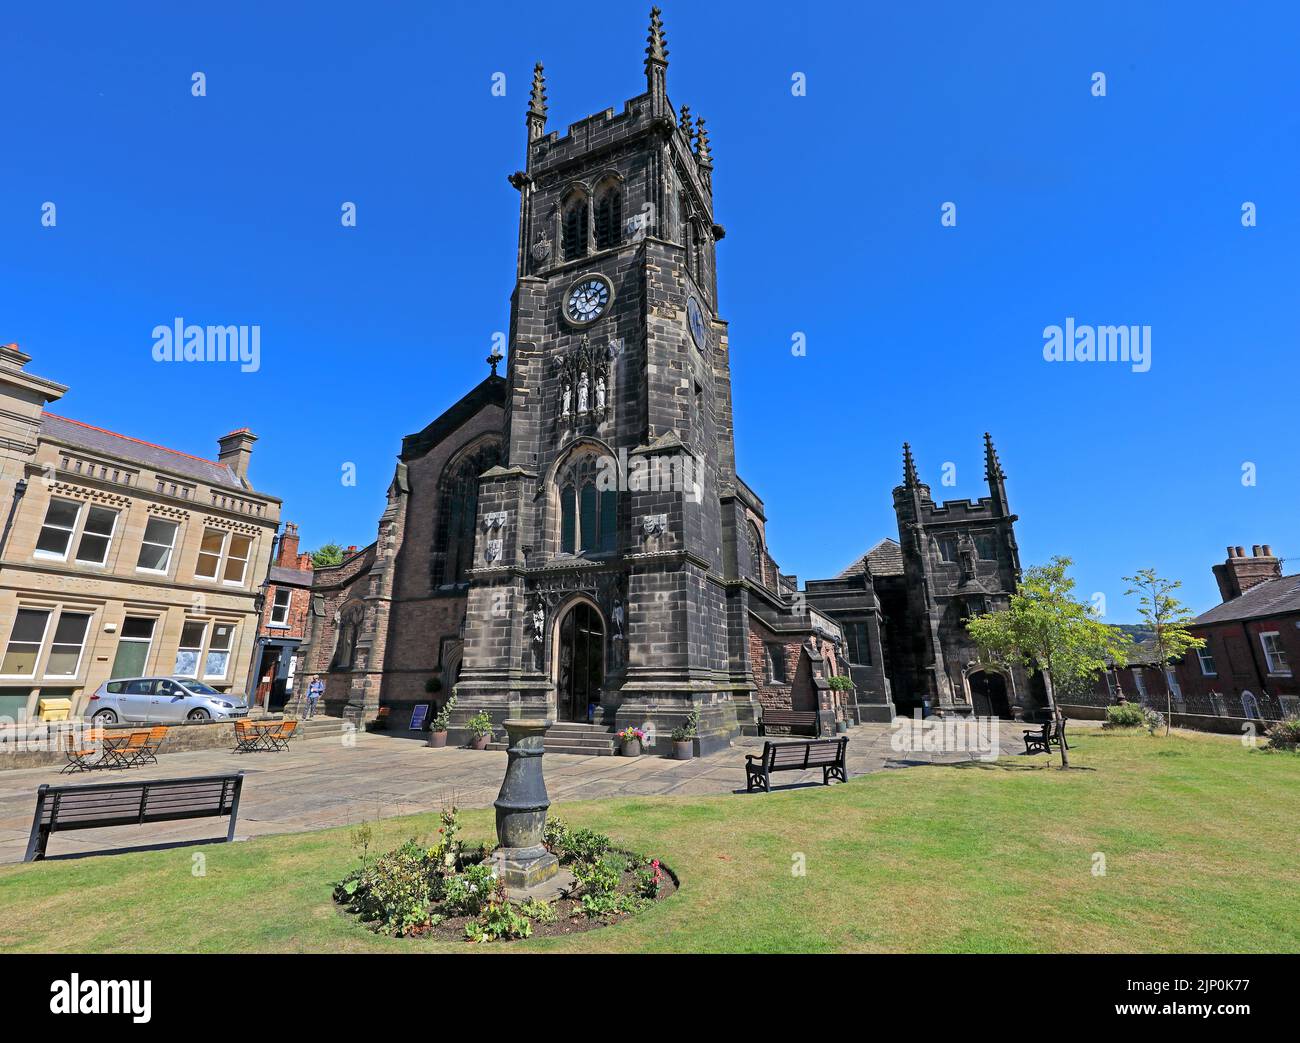 Ciel bleu d'été à la porte de l'église St Michael & All Angels, Market place, Macclesfield, Cheshire, Angleterre, ROYAUME-UNI, SK10 1DY Banque D'Images